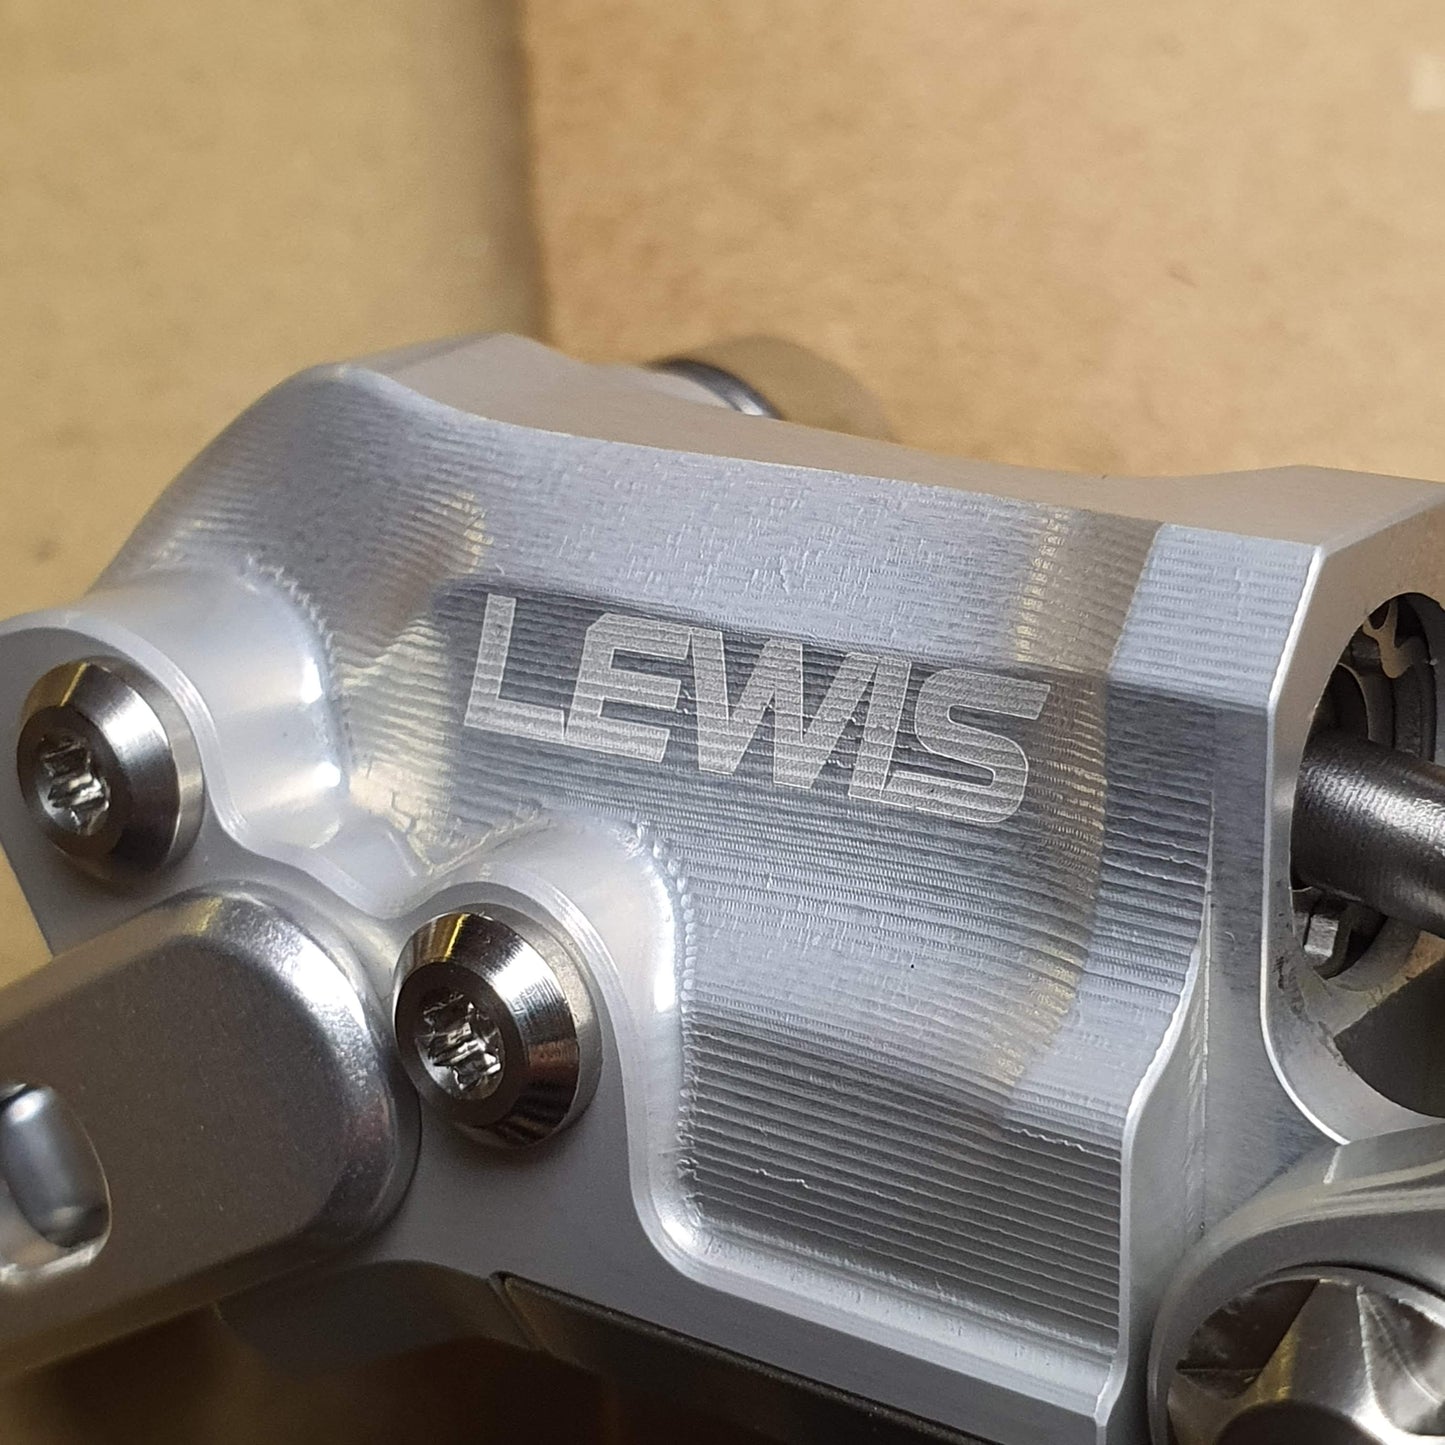 Lewis LV2 Dual Pistons Bremse til XC Trial Bike | Super letvægt | Gratis verdensomspændende forsendelse